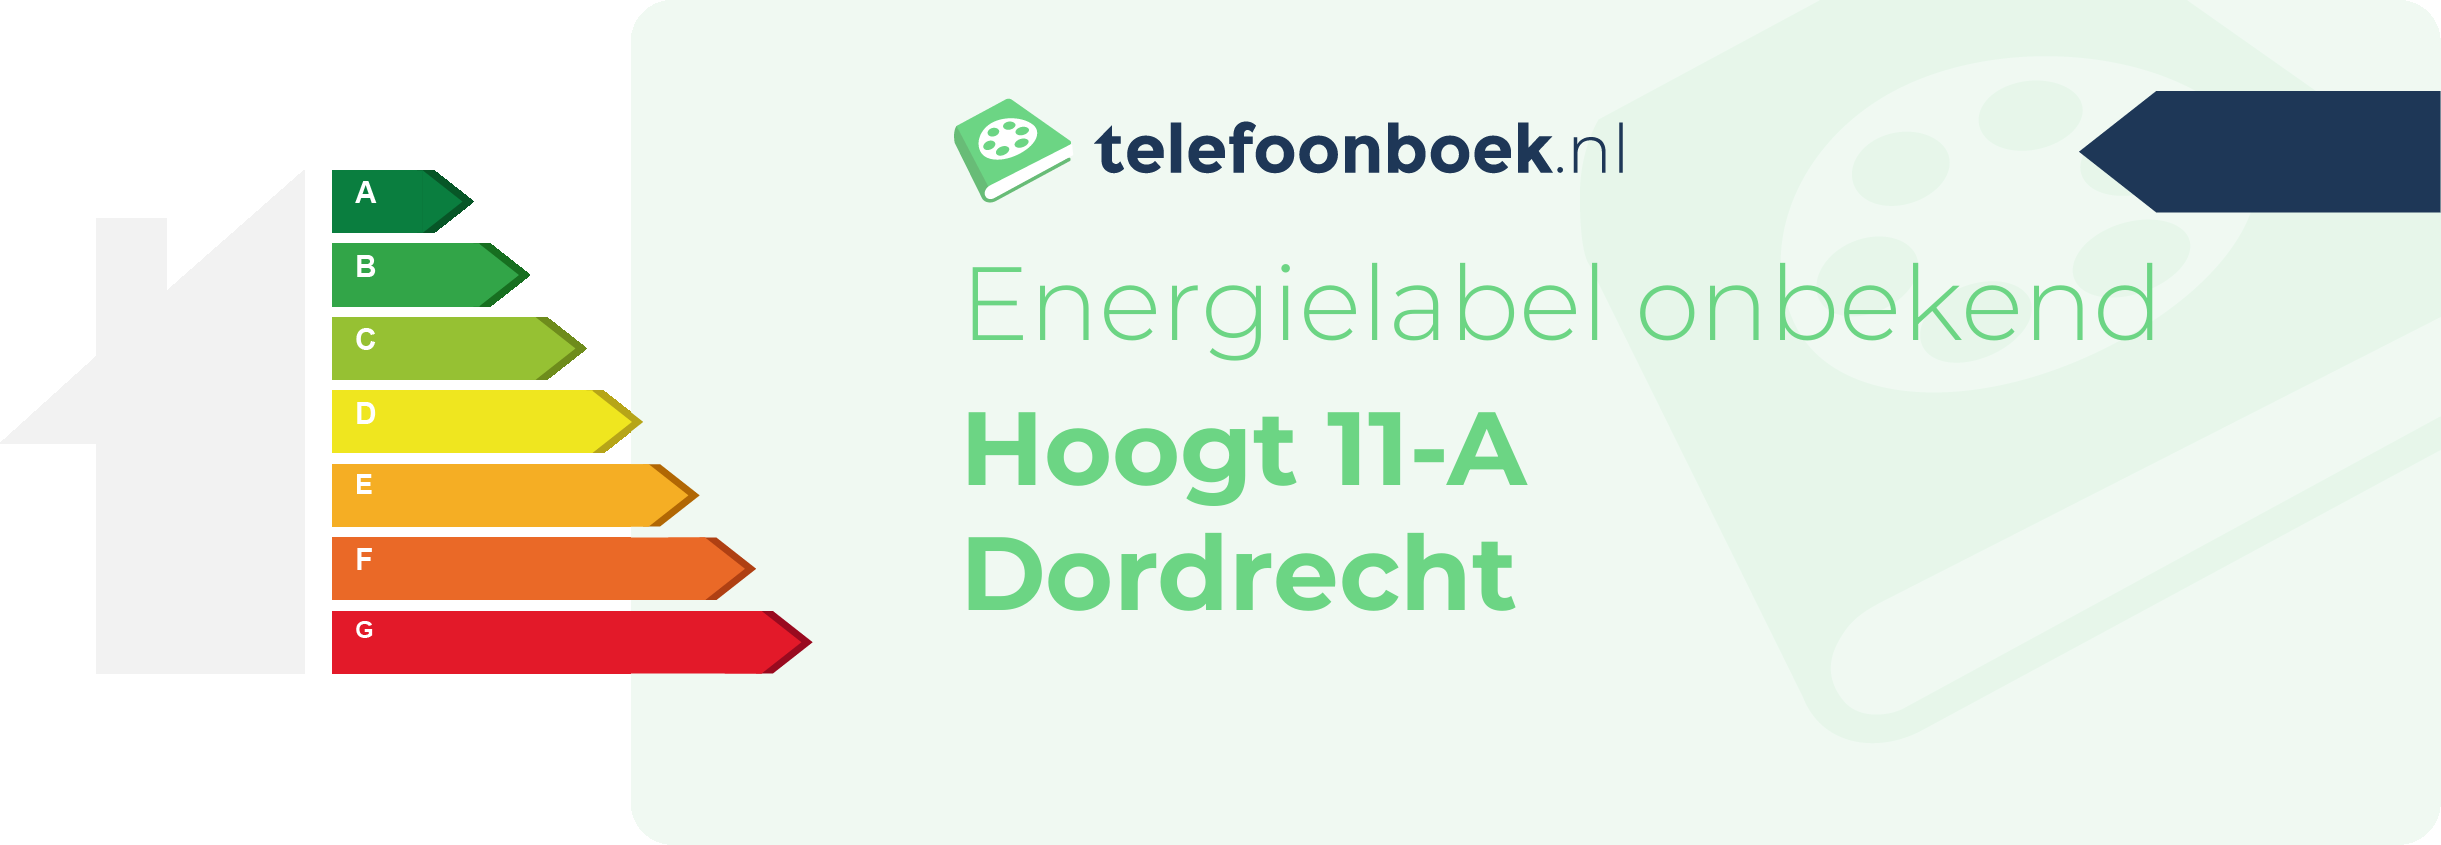 Energielabel Hoogt 11-A Dordrecht